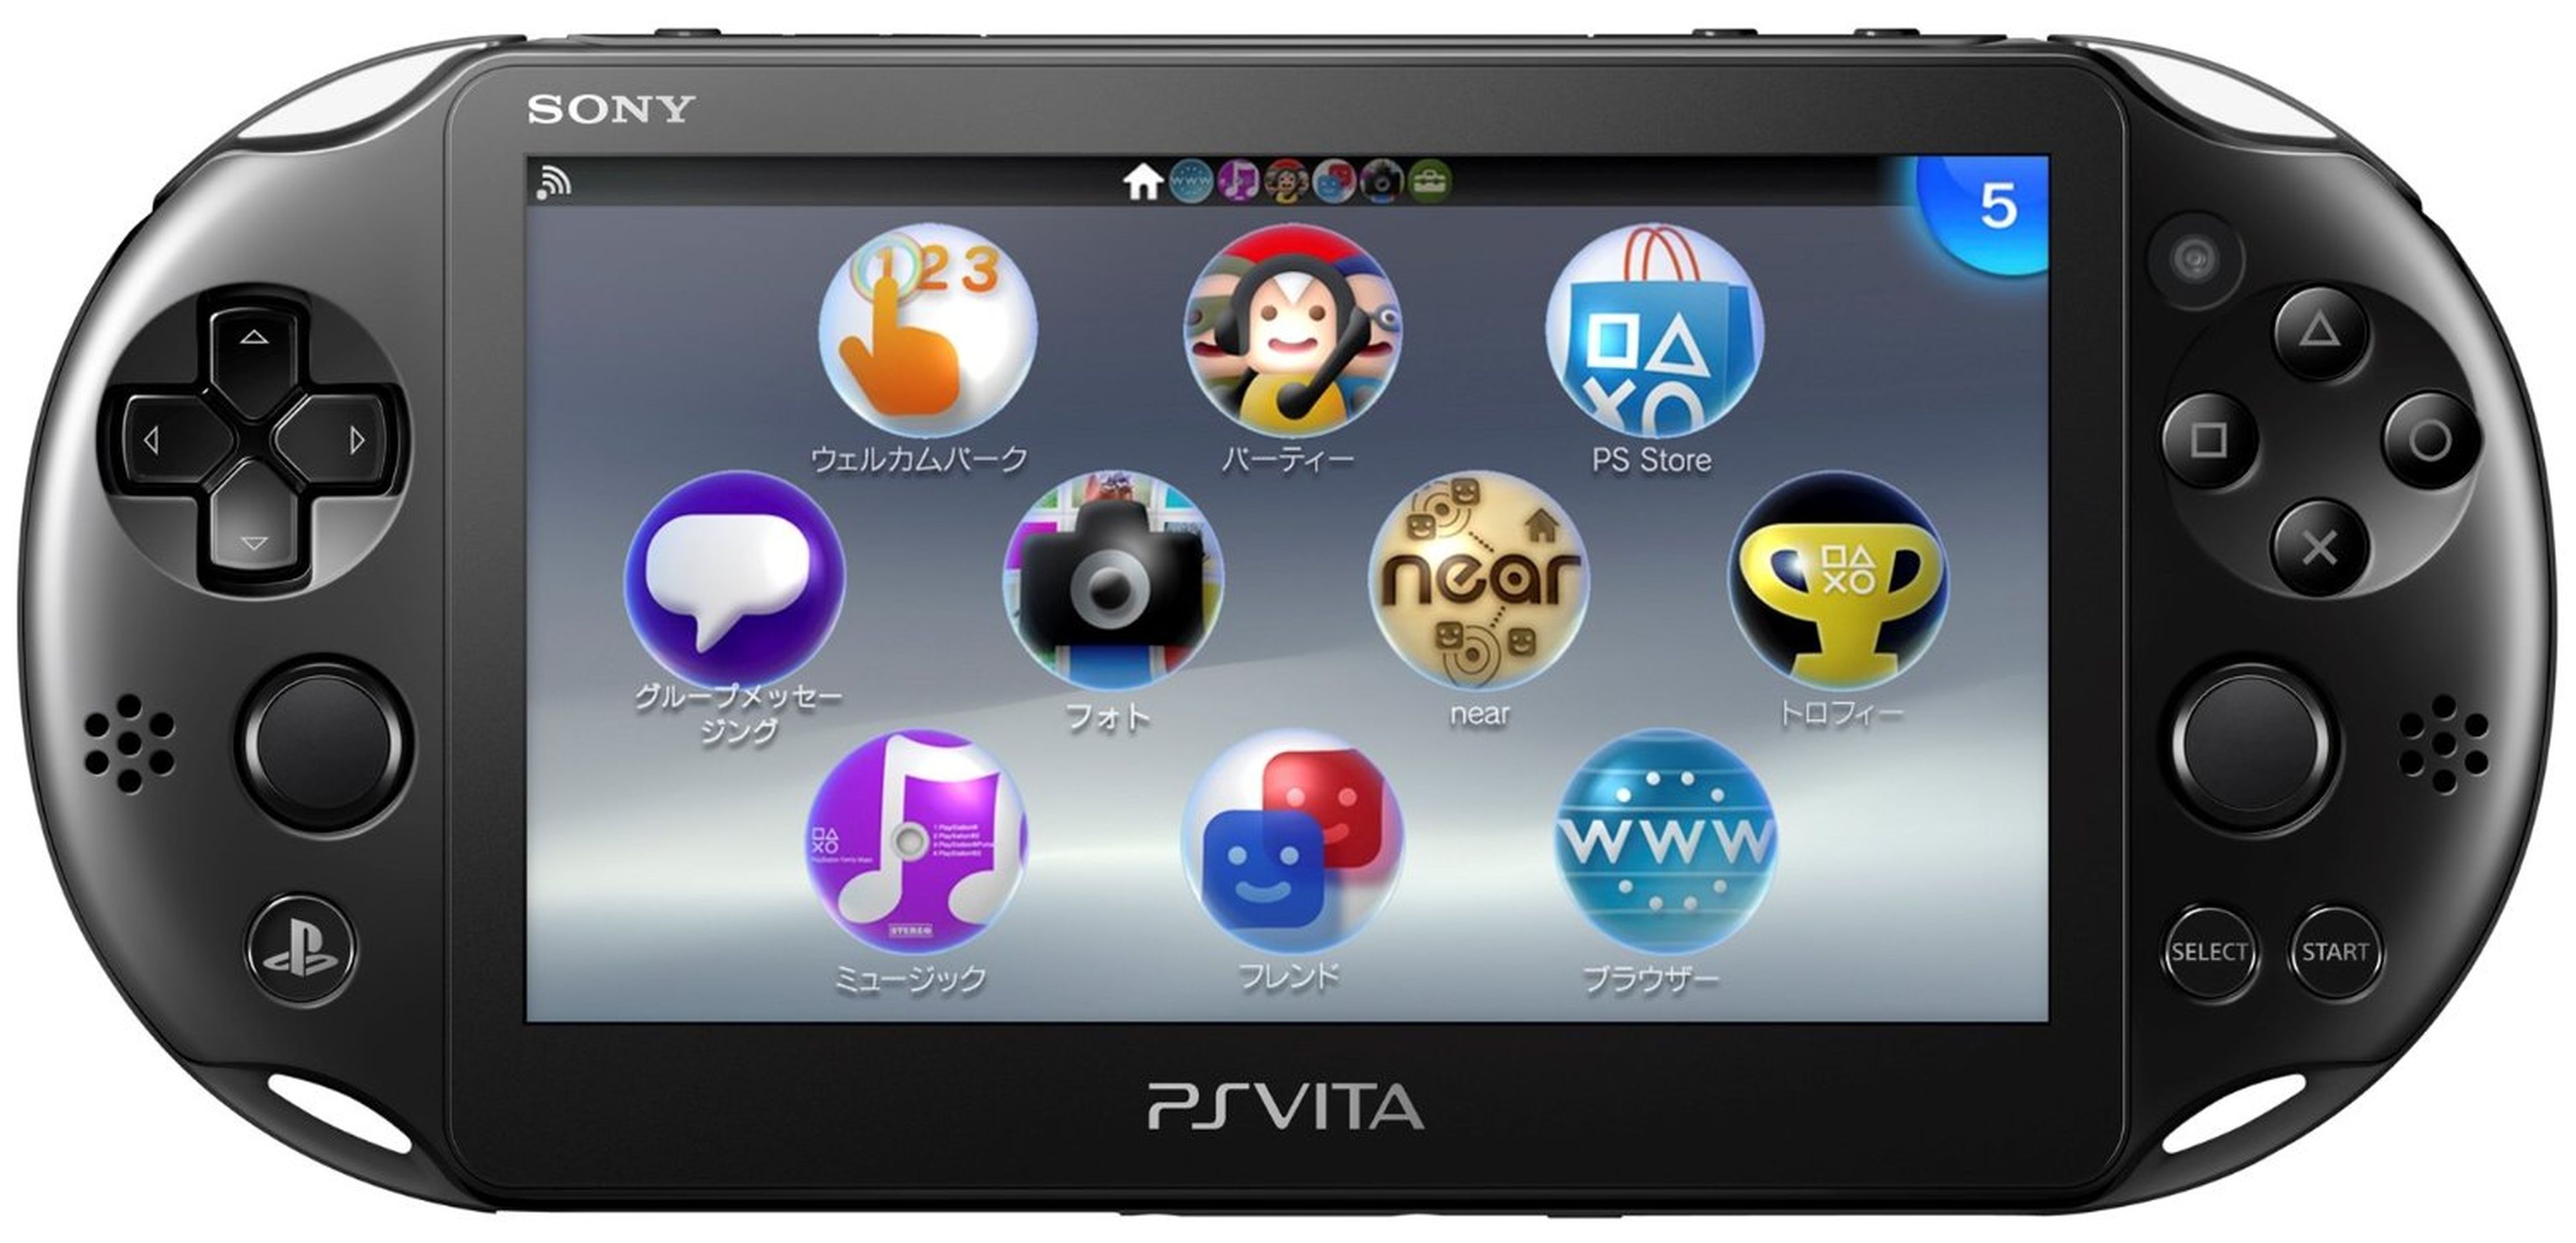 PS Vita deja de fabricarse definitivamente en 2019 | Hobby Consolas